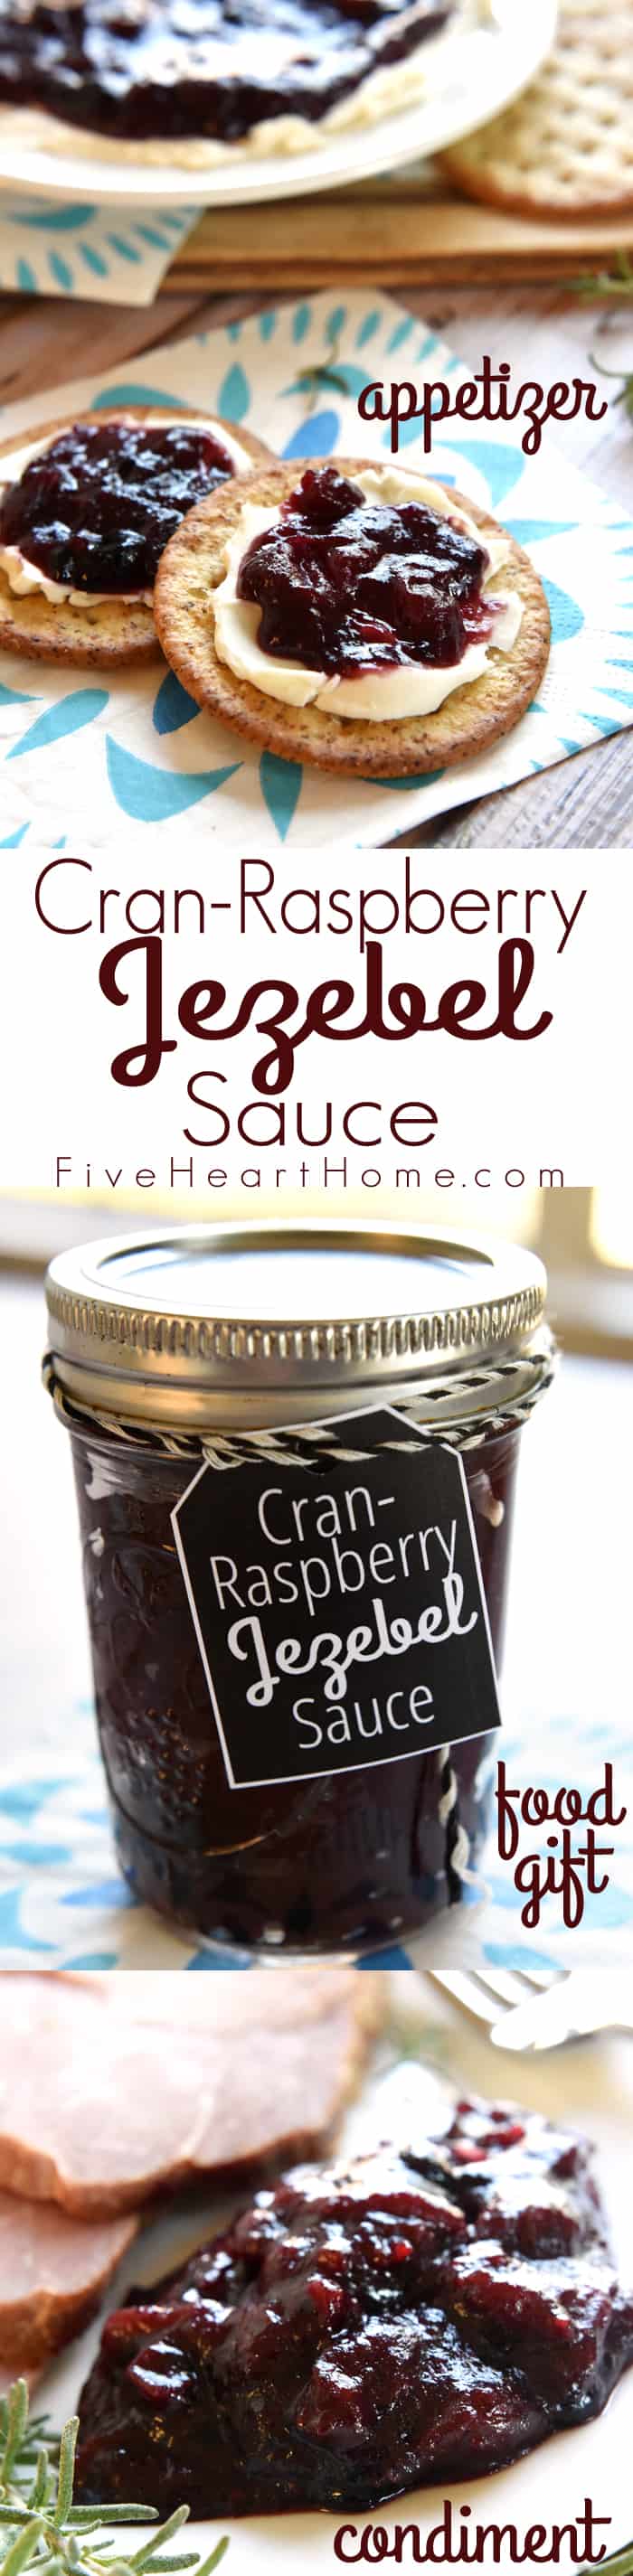 Cran-Raspberry Jezebel Sauce, three-photo collage with text.